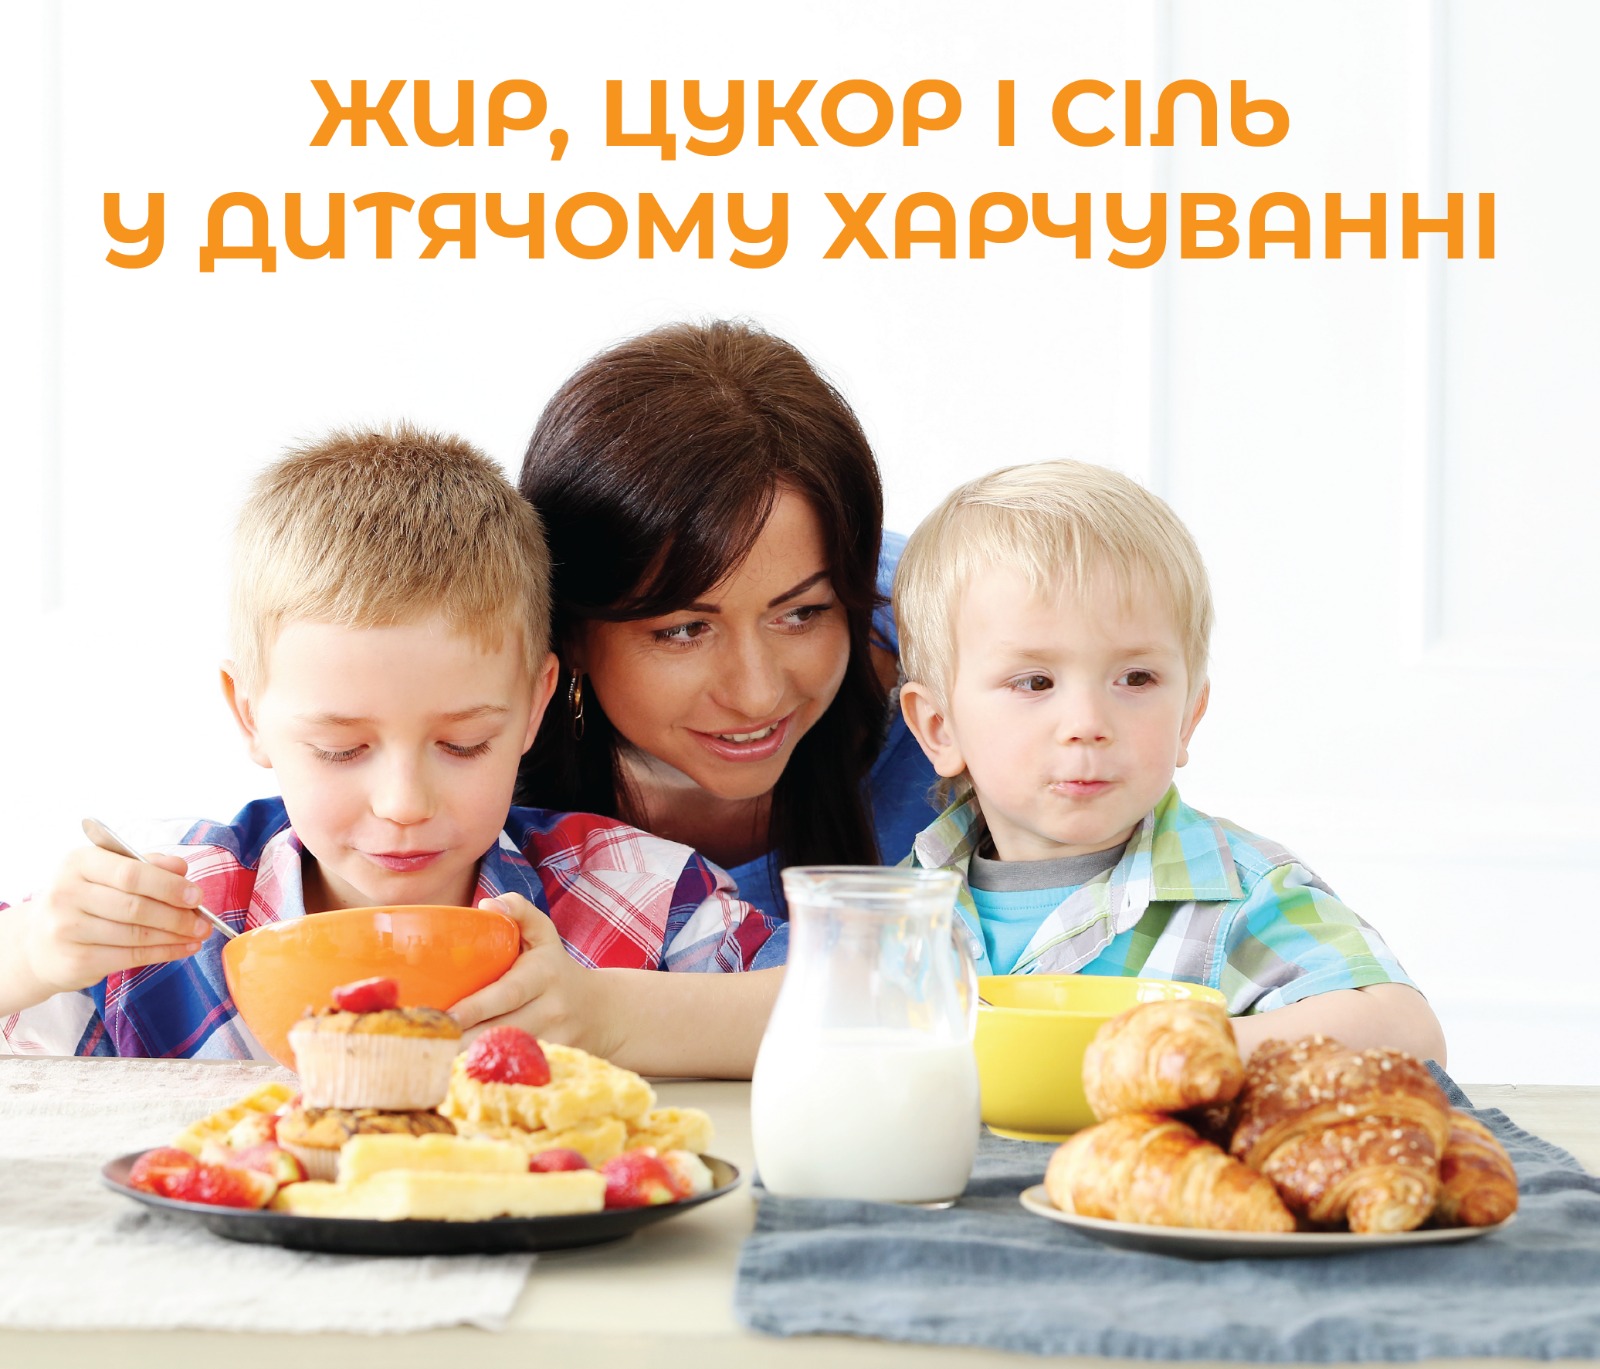 На зображенні мама та дітлахи які споживають їжу, на столі графин з молоком в тарілках рогалики та тістечка, у верхній частині напис: Жир, цукор і сіль у дитячому харчуванні